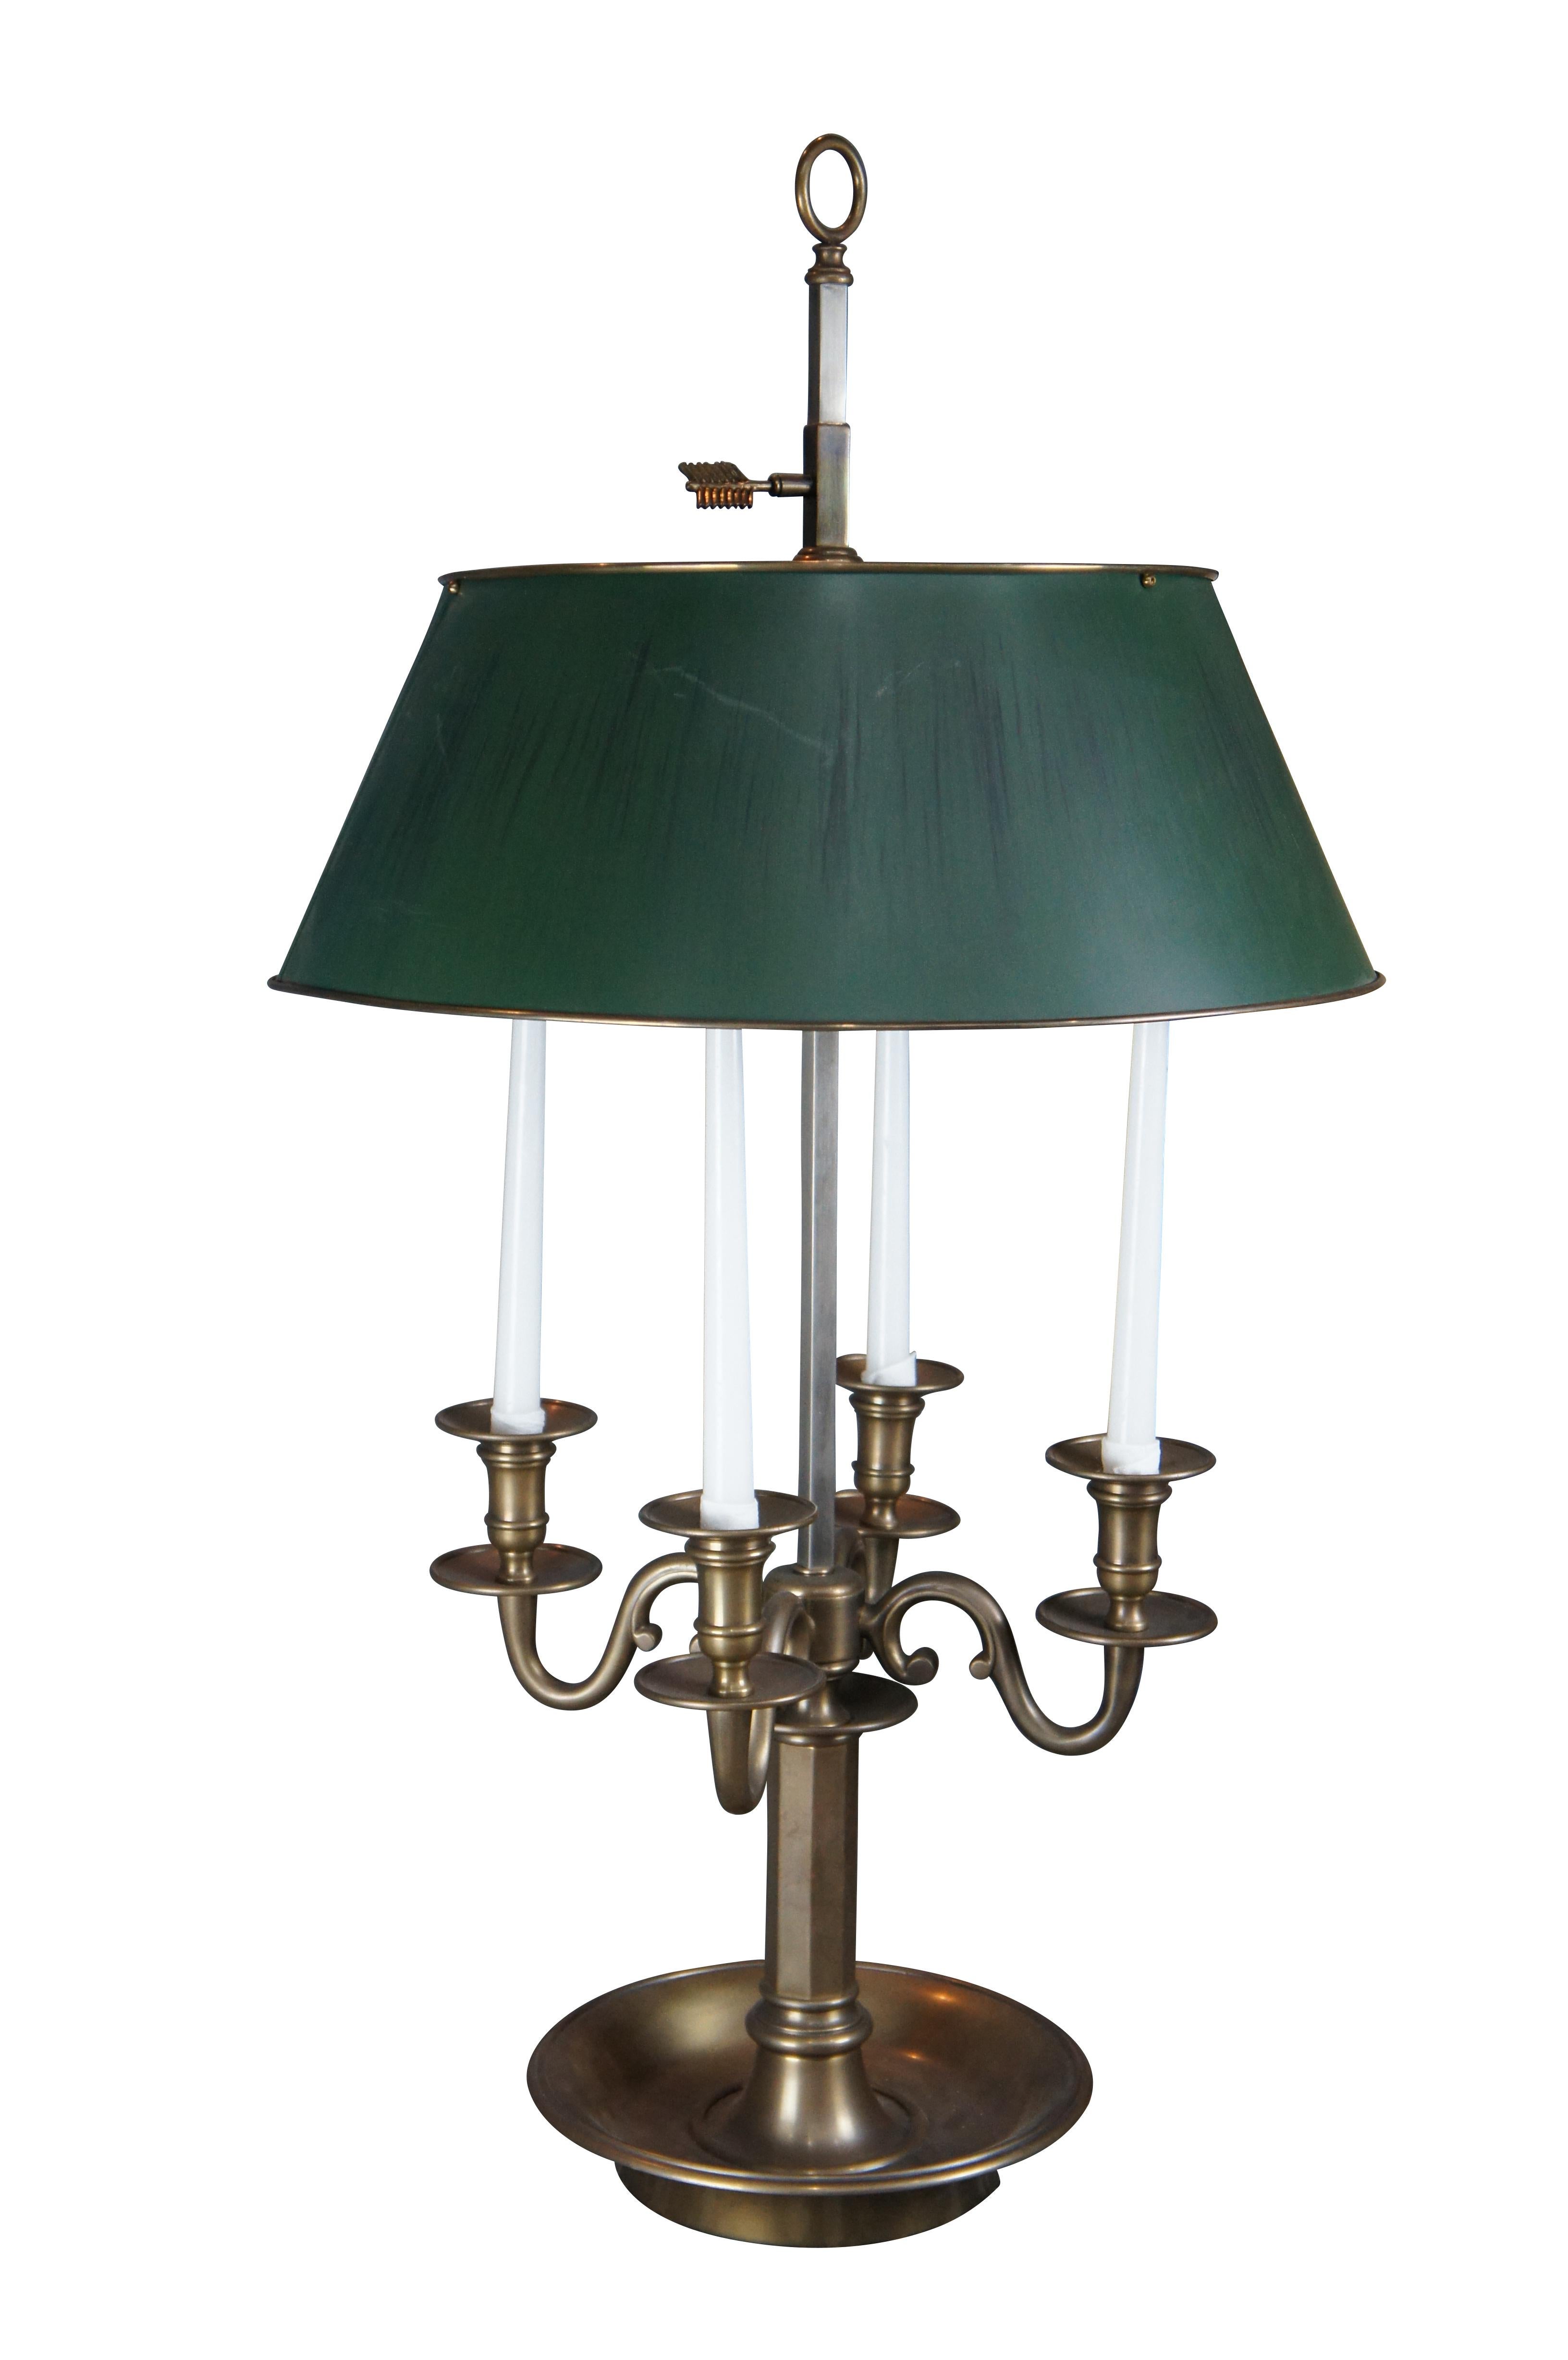 Grande et impressionnante lampe Bouillotte d'inspiration française de la fin du 20ème siècle par Visual Comfort. Le candélabre à quatre bras est surmonté d'un support hexagonal et d'une base circulaire. La lampe se compose d'une colonne de forme